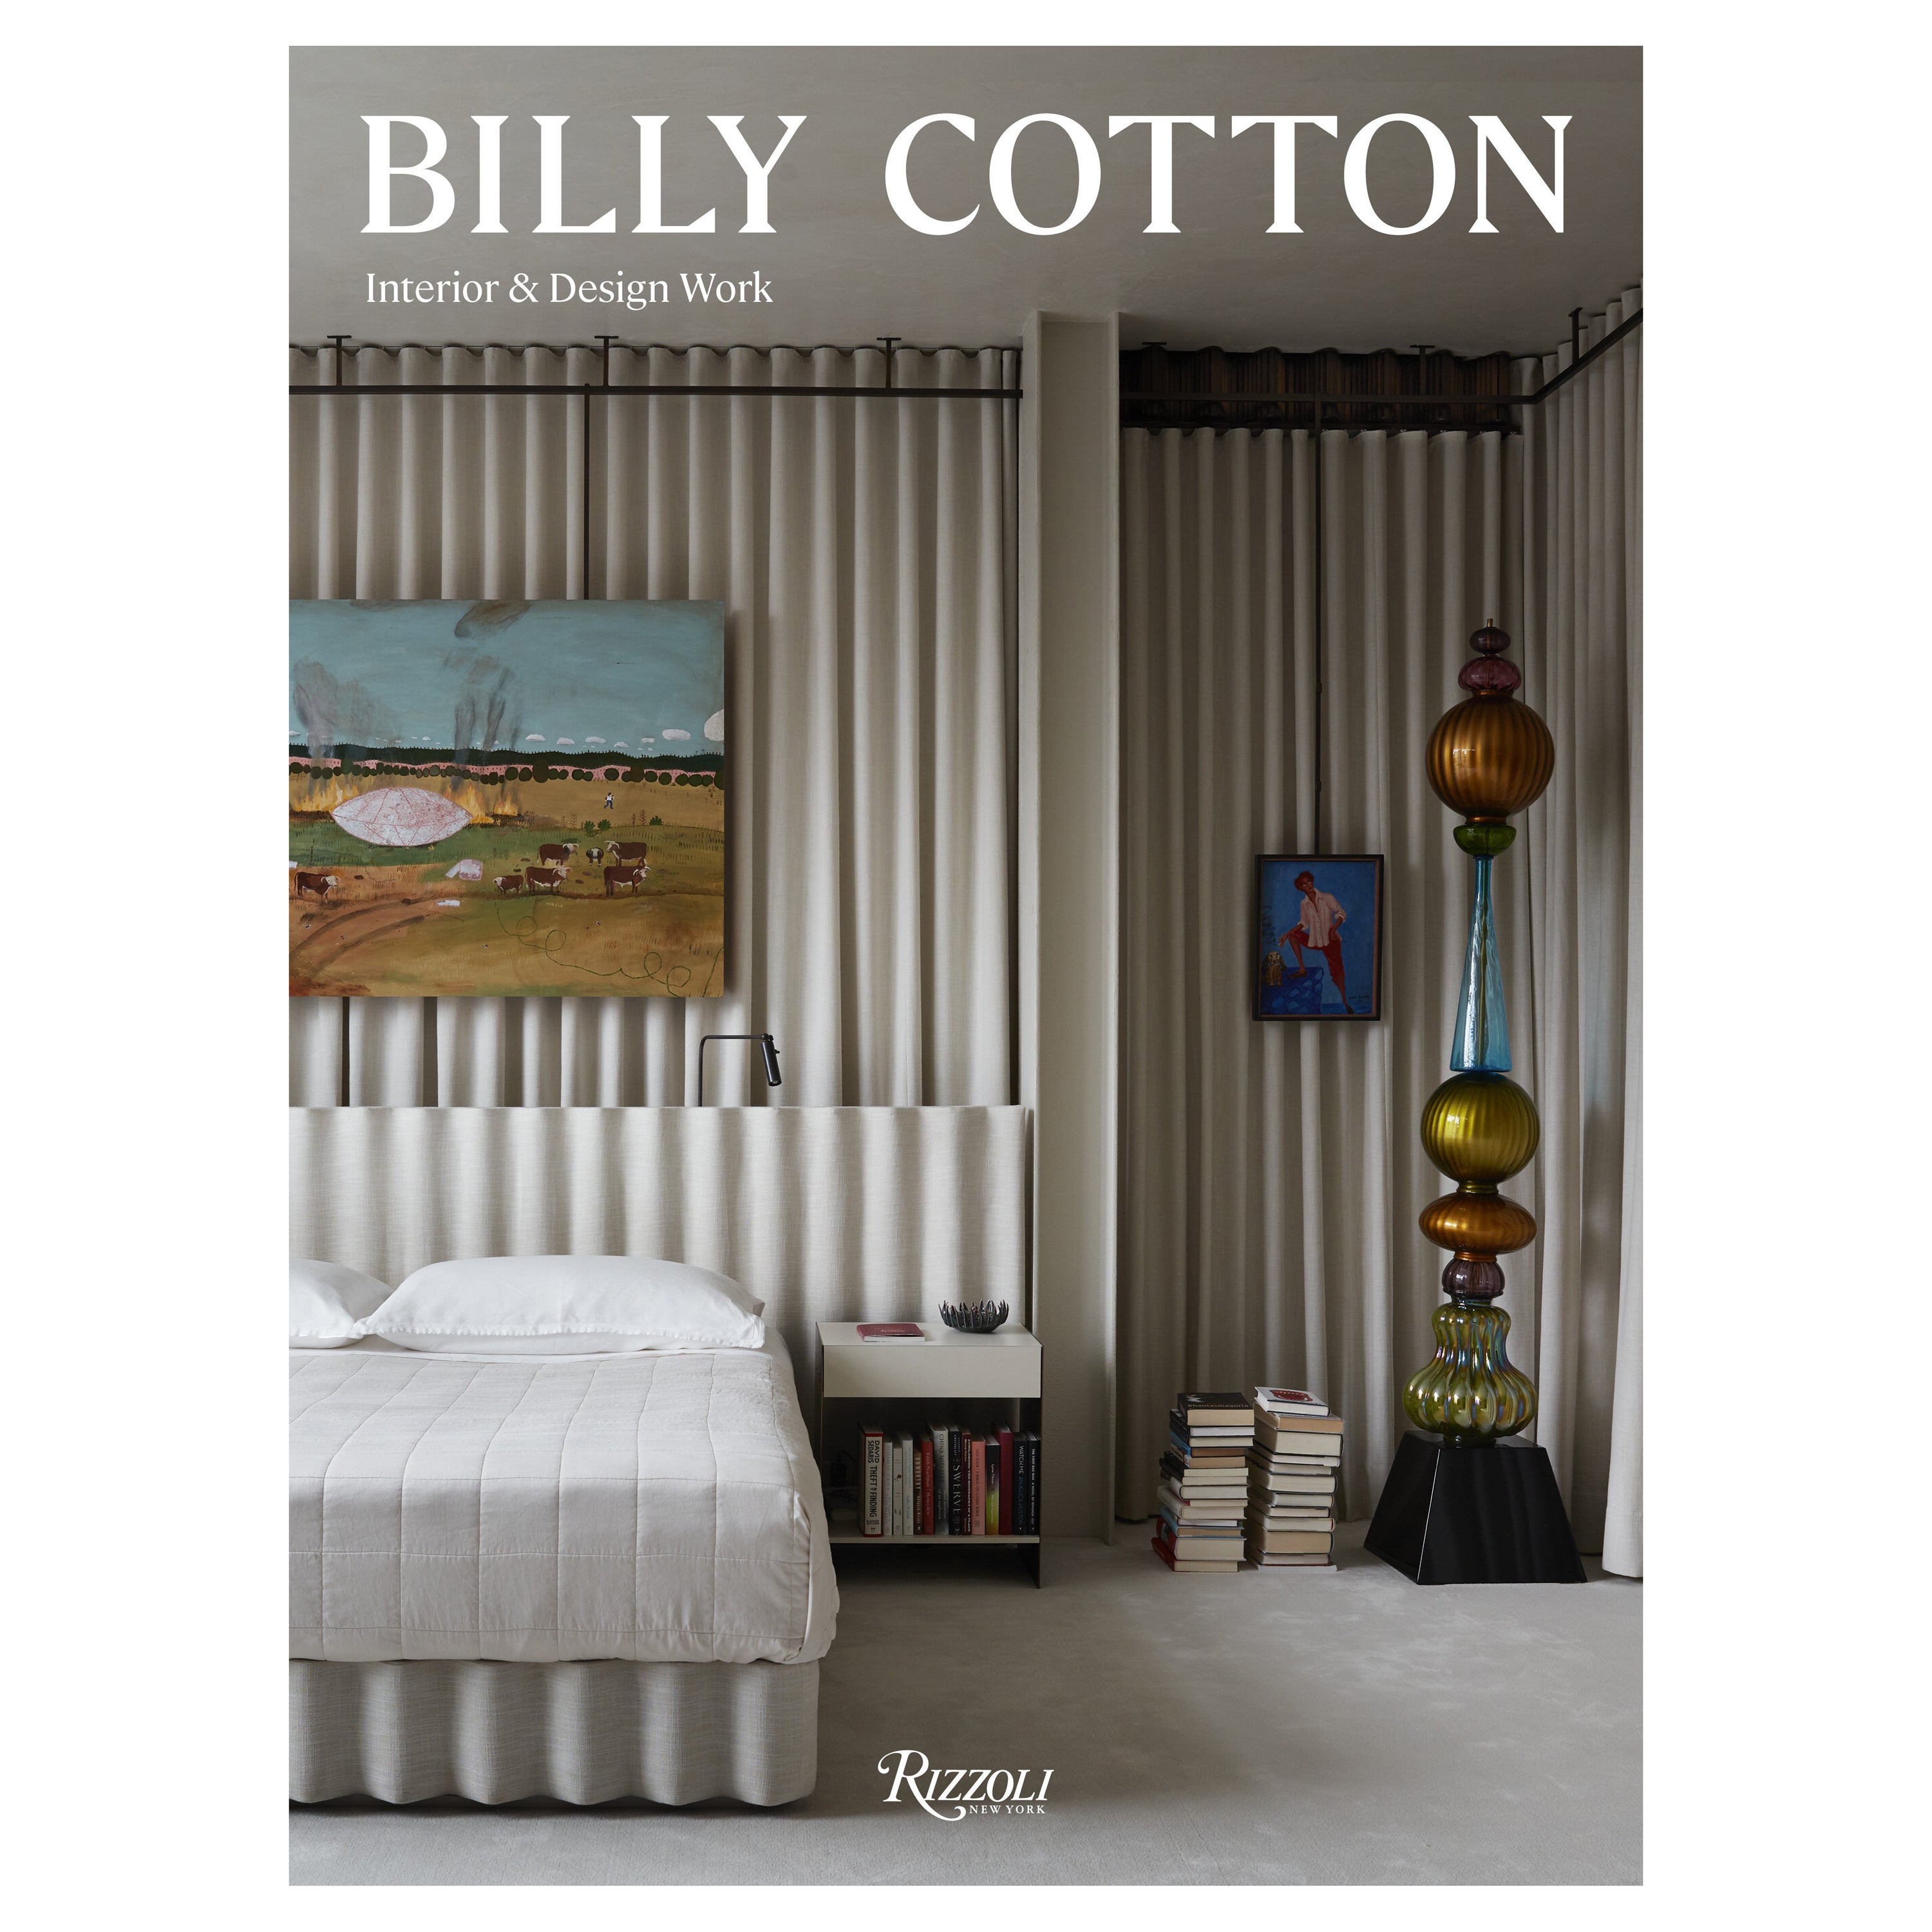 Œuvres d'intérieur et de design en coton Billy